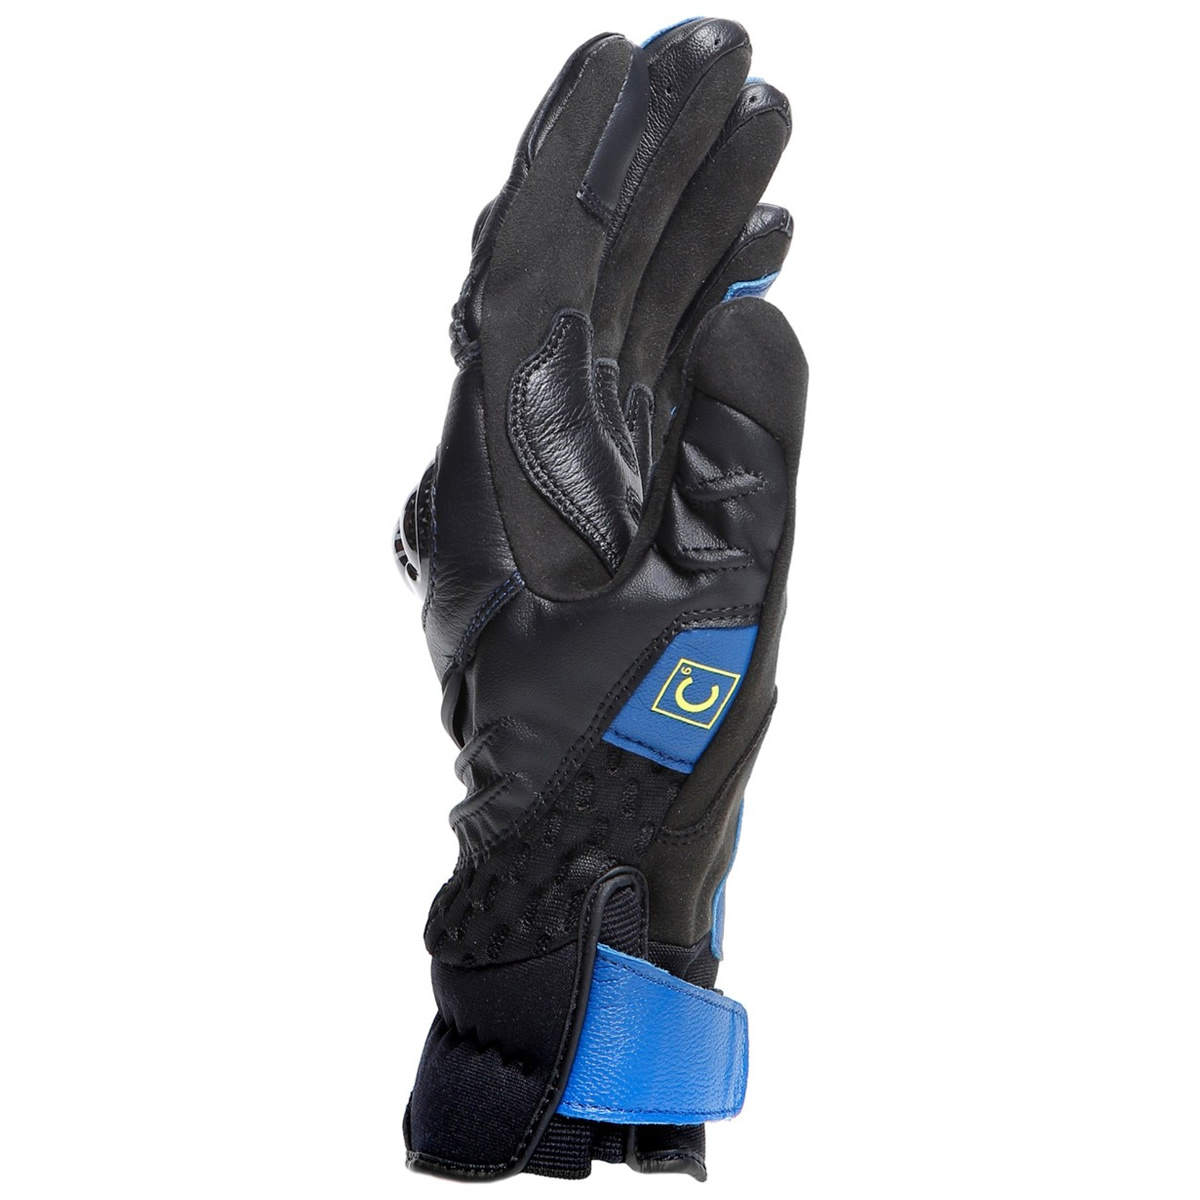 Dainese Handschuhe Carbon 4 Short, blau-schwarz-fluogelb